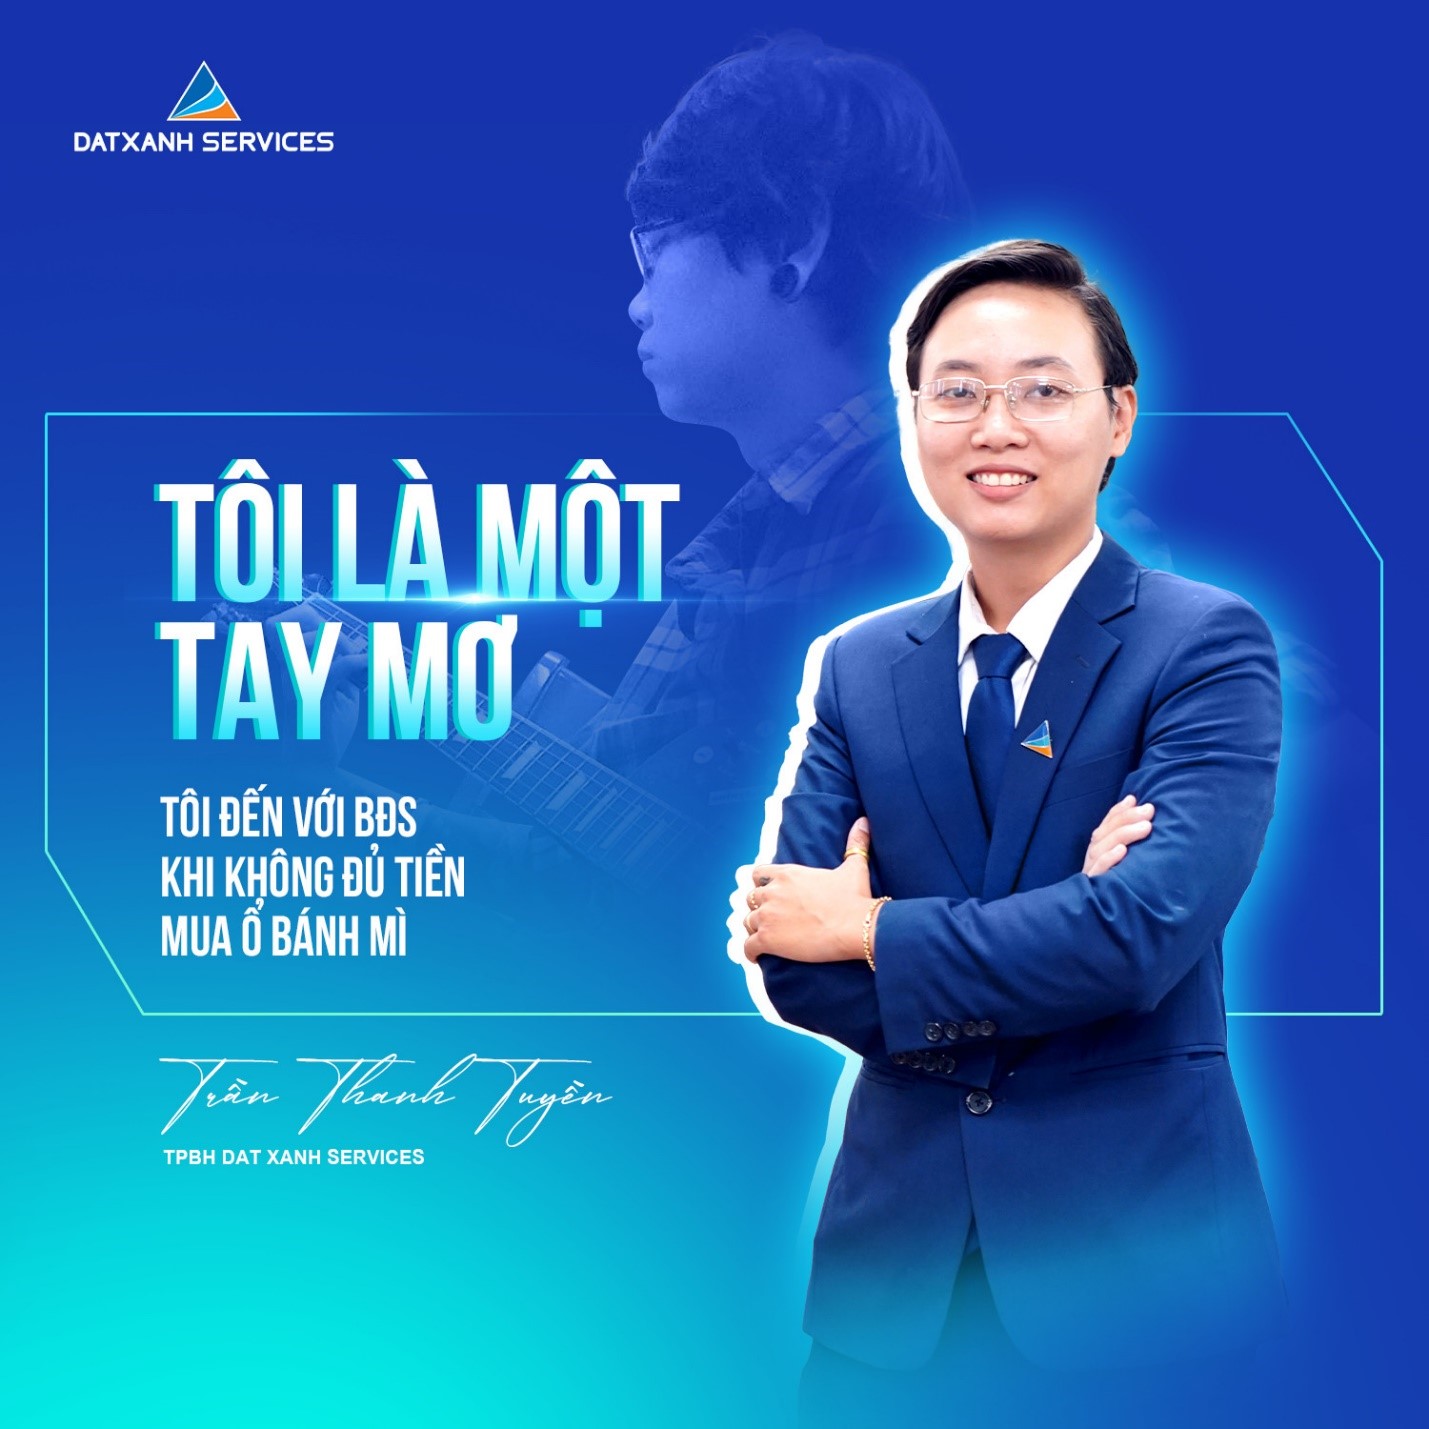 Trần Thanh Tuyền: “Tay mơ” đến với BĐS khi không đủ tiền mua ổ bánh mì